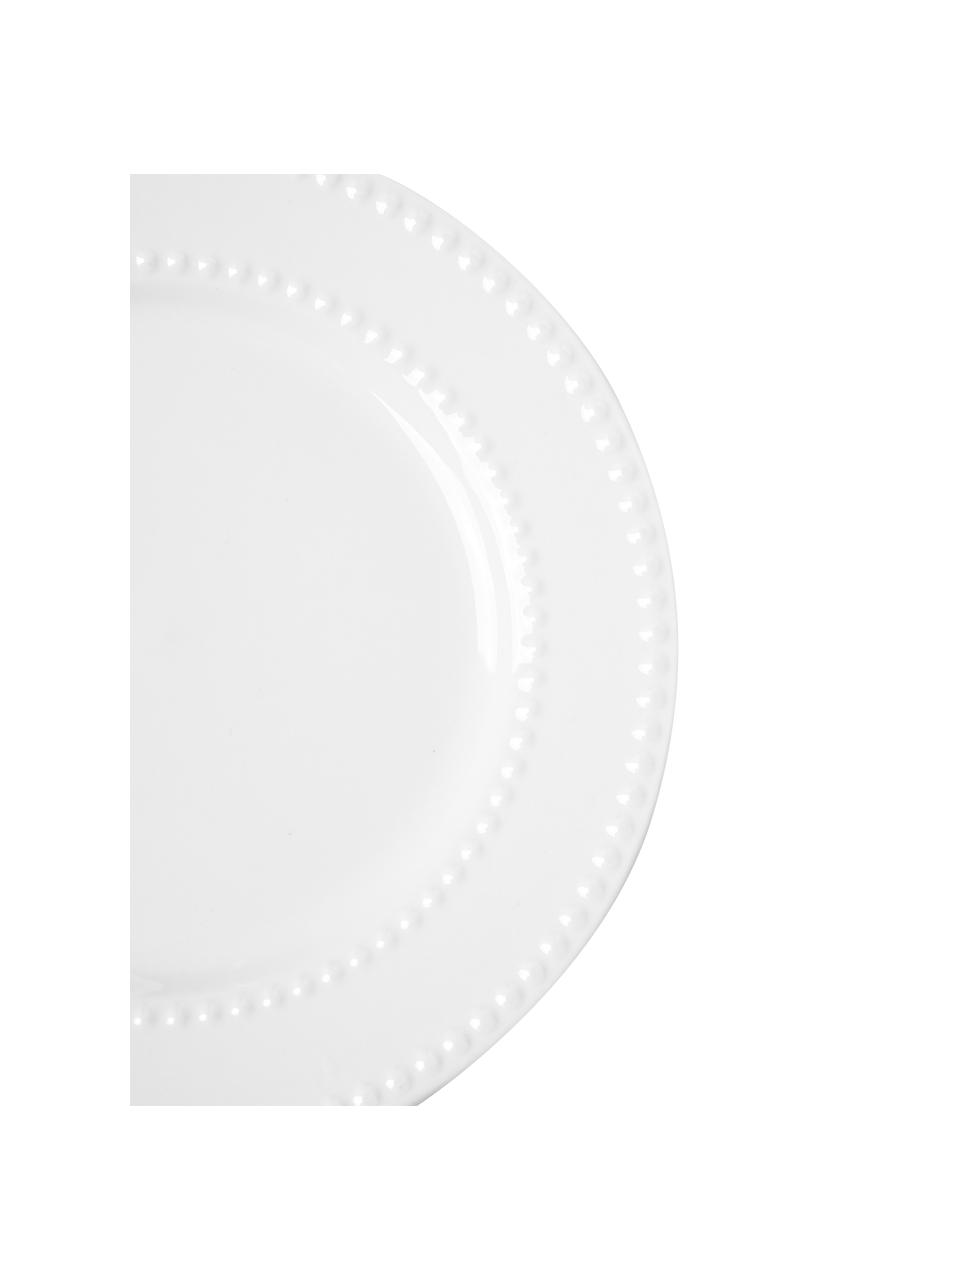 Porzellan-Frühstücksteller Pearl, 6 Stück, Porzellan, Weiß, Ø 20 x H 2 cm